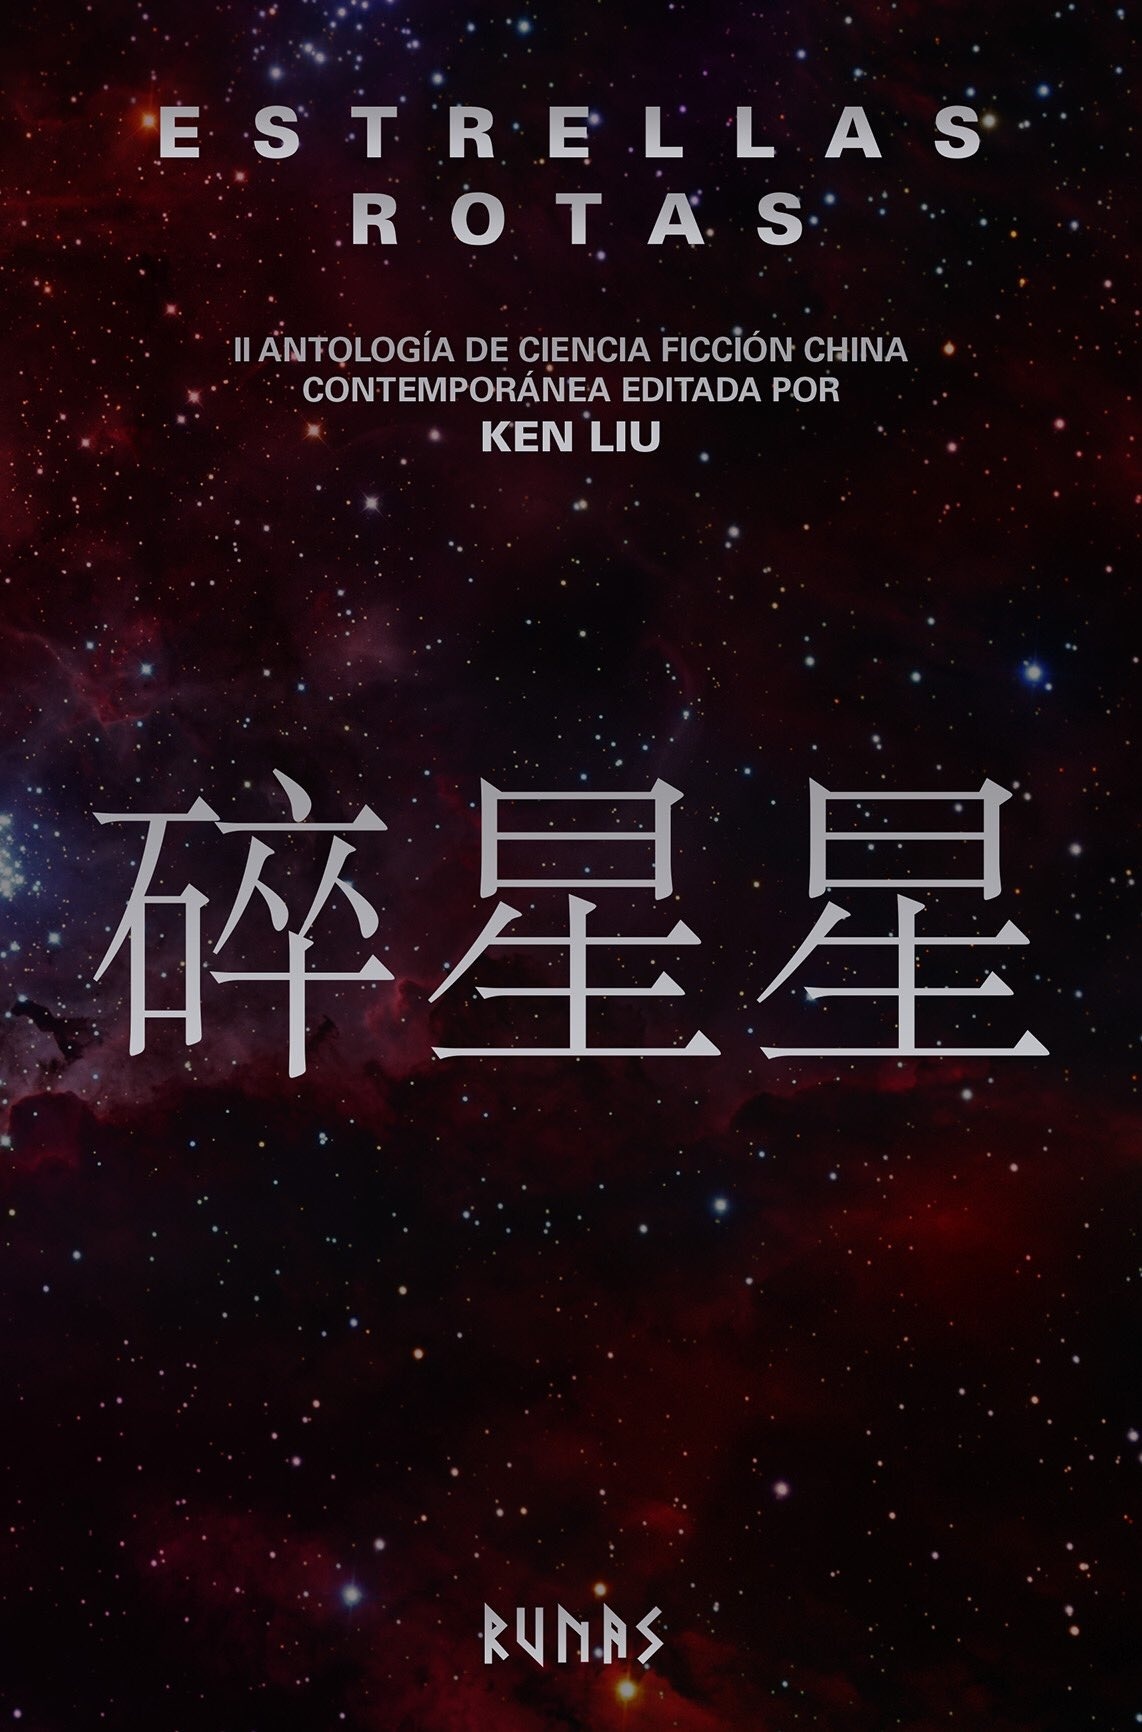 Estrellas rotas "II Antología de la ciencia ficción china contemporánea"